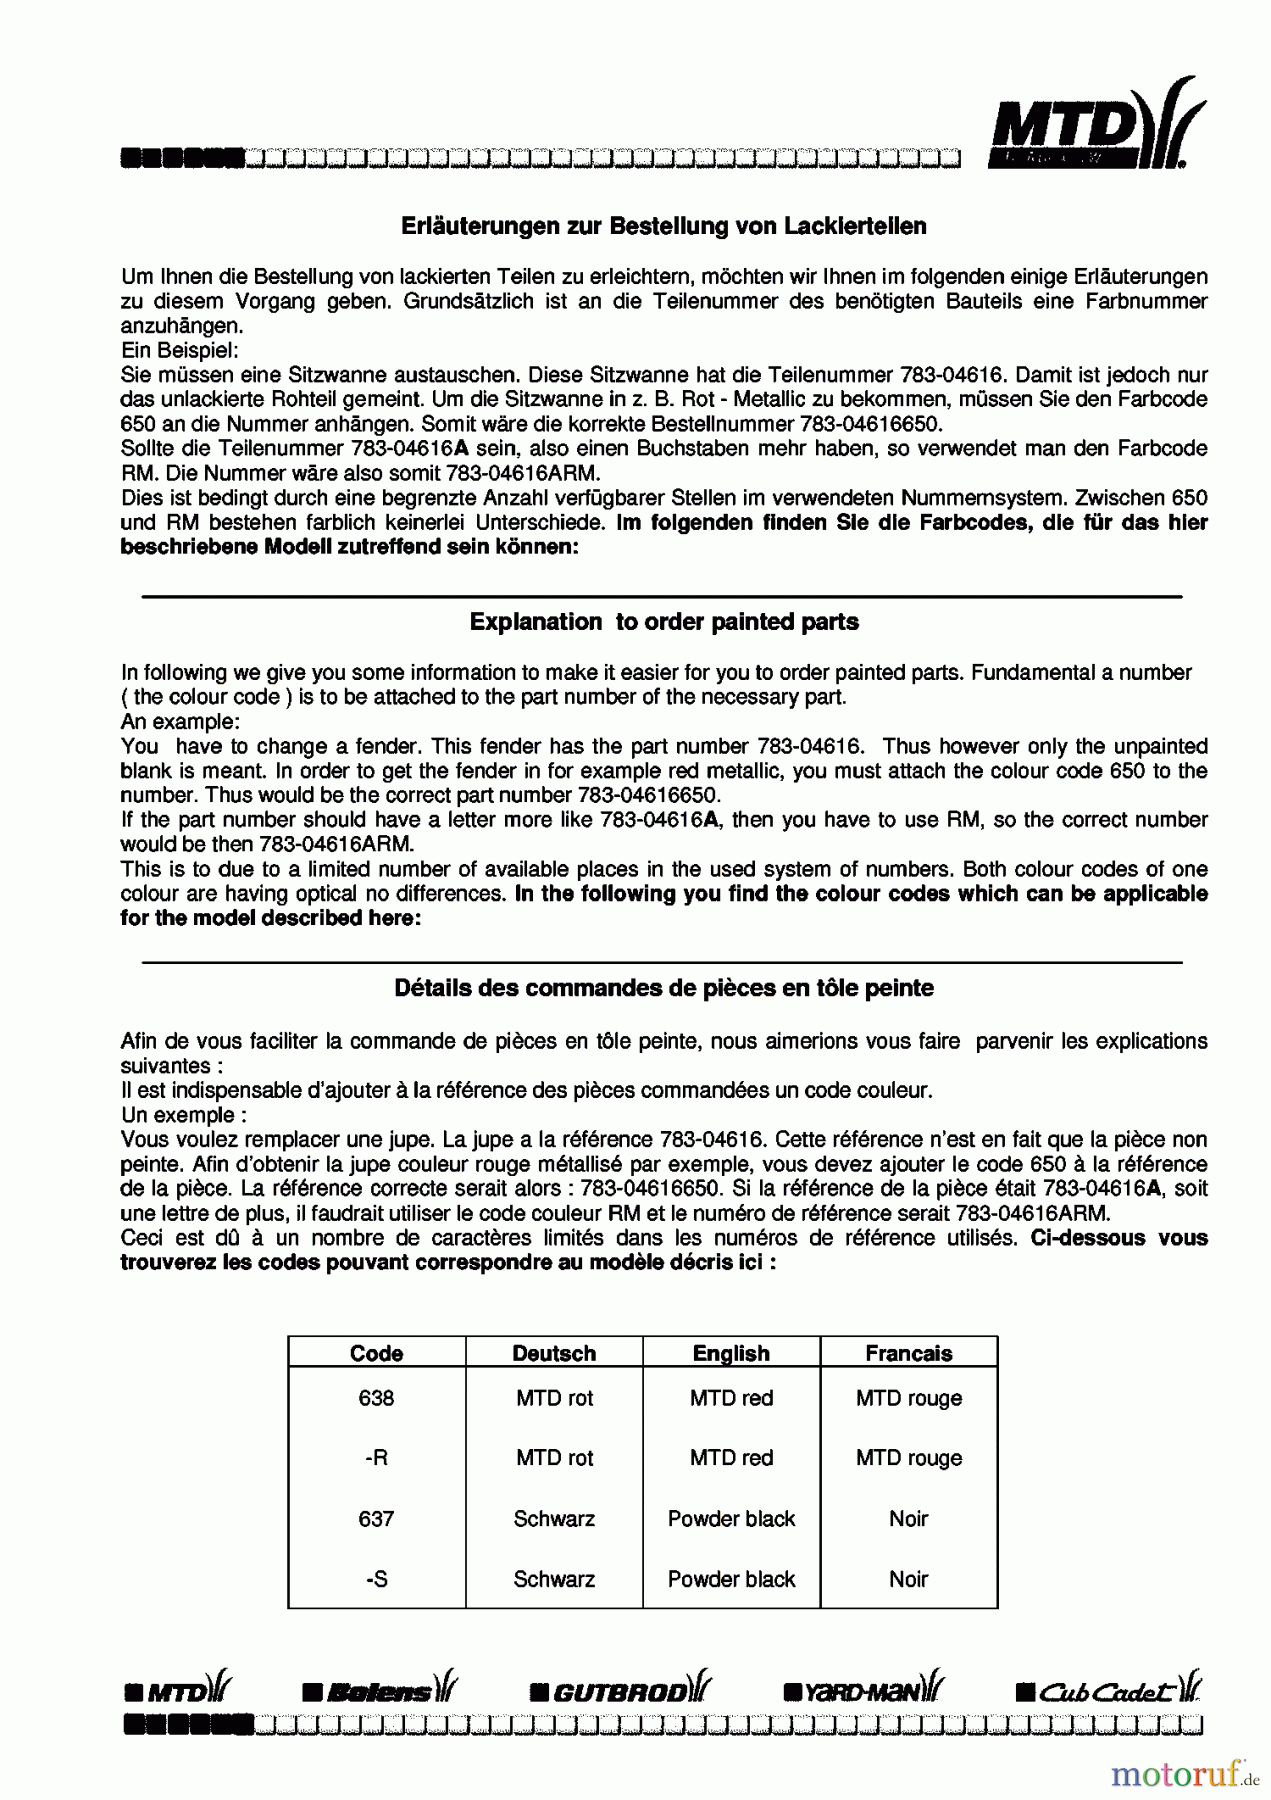  Univert Tracteurs de pelouse 130 BF 13AA47UF663  (2000) Information du code de couleur